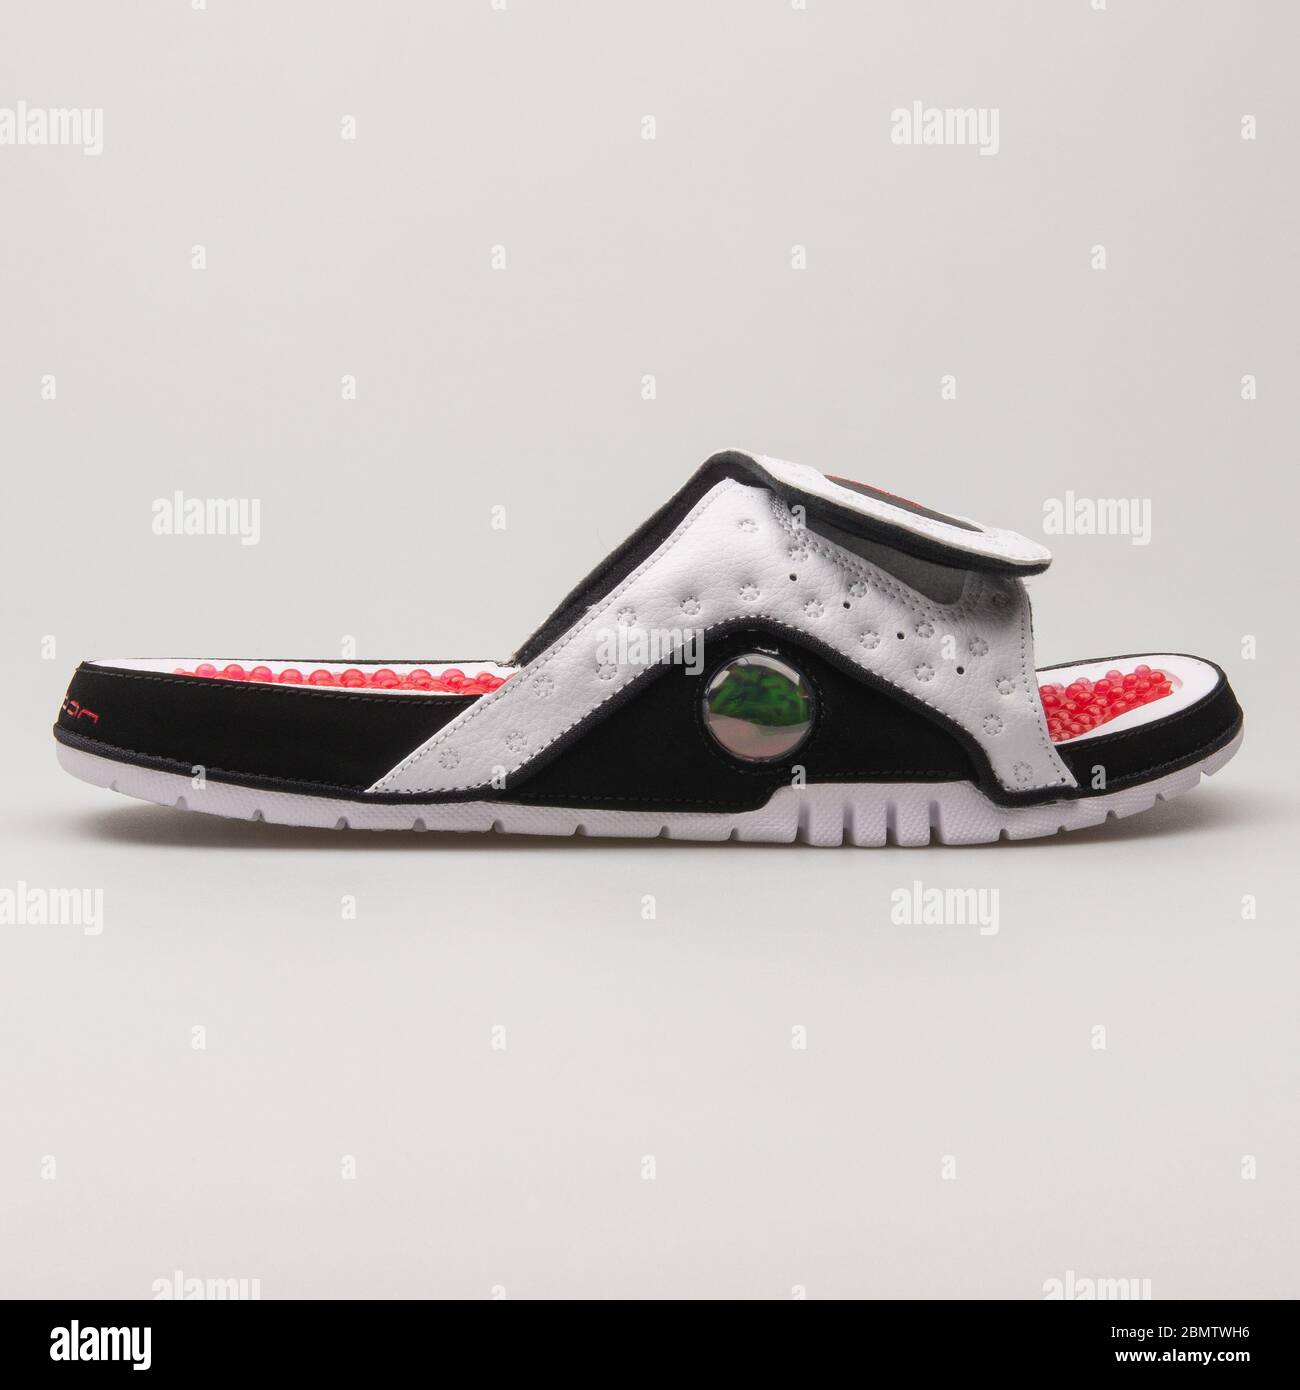 VIENNE, AUTRICHE - 14 JUIN 2018 : sandale blanche, noire et rouge Nike  Jordan Hydro 13 Retro sur fond blanc Photo Stock - Alamy